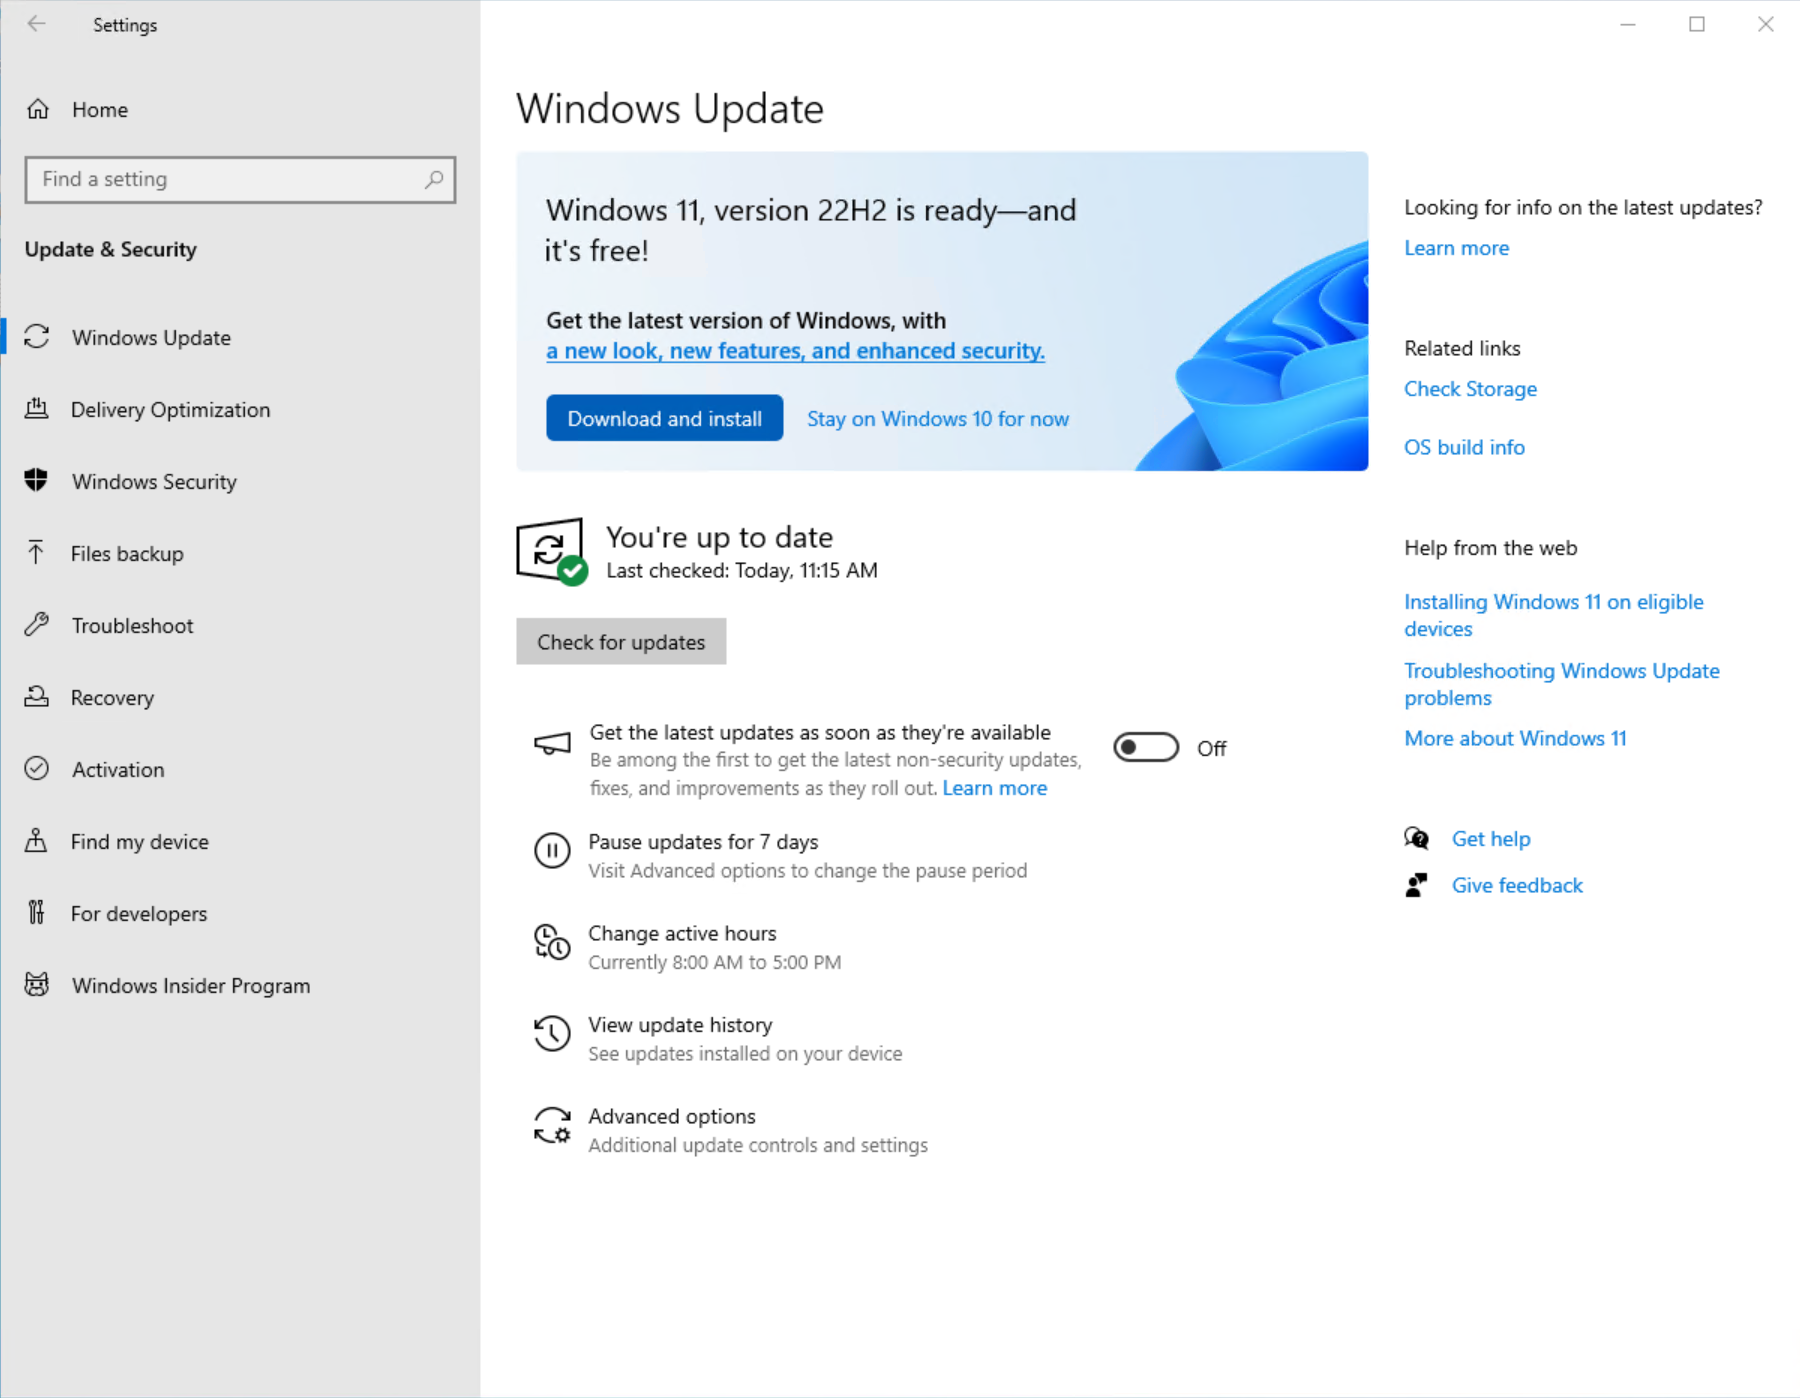 لقطة شاشة لصفحة Windows Update في الإعدادات تظهر أن Windows 11 جاهز للتنزيل وتثبيته.